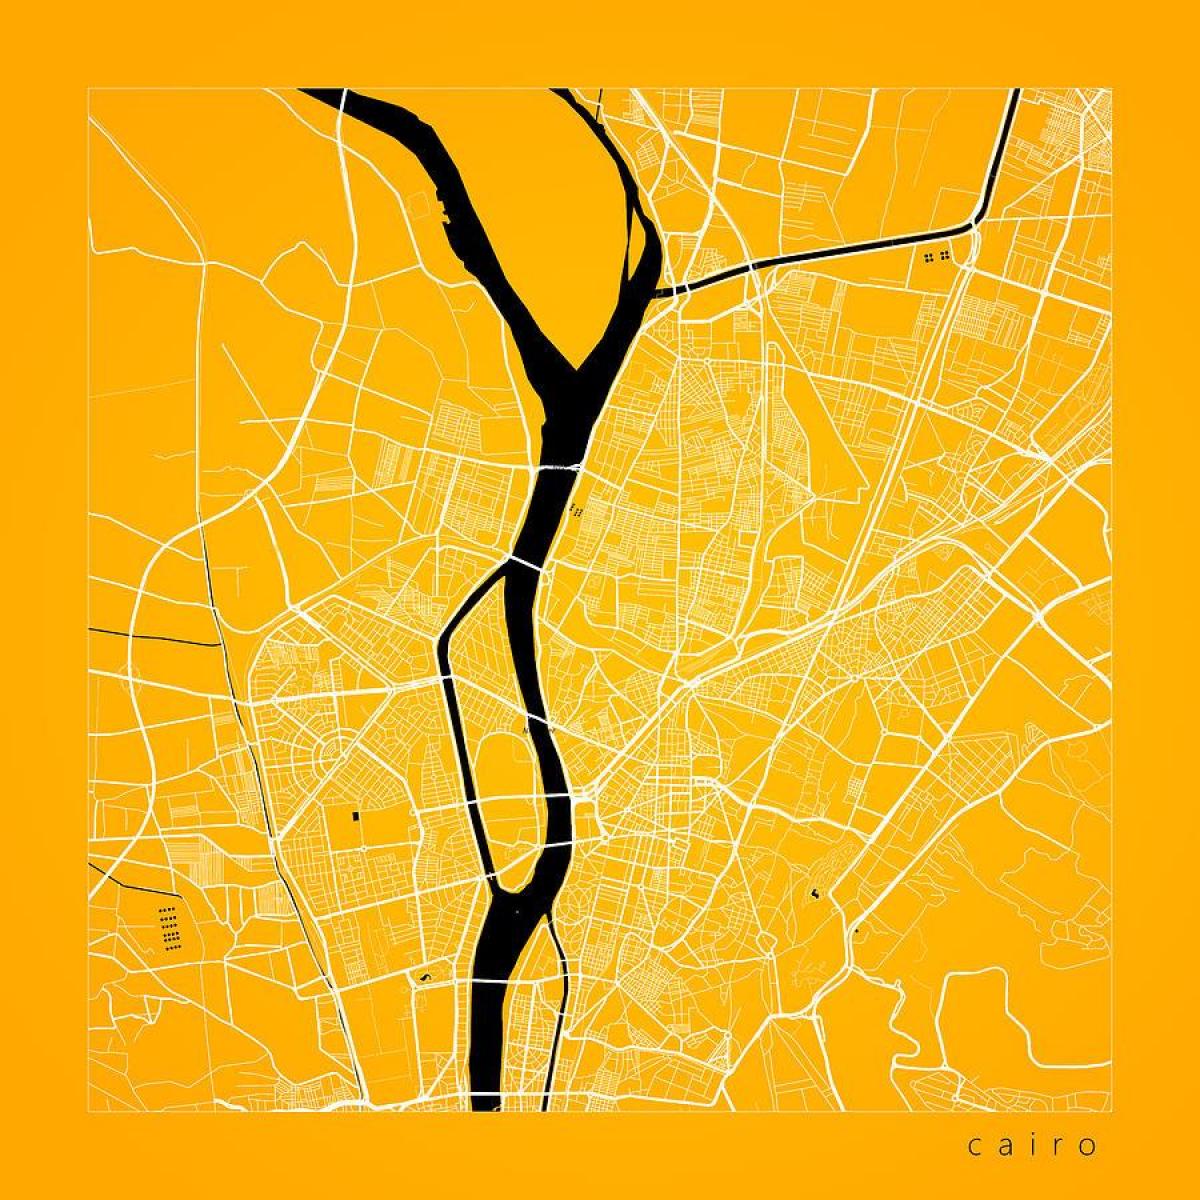 Kaart van kaïro straat